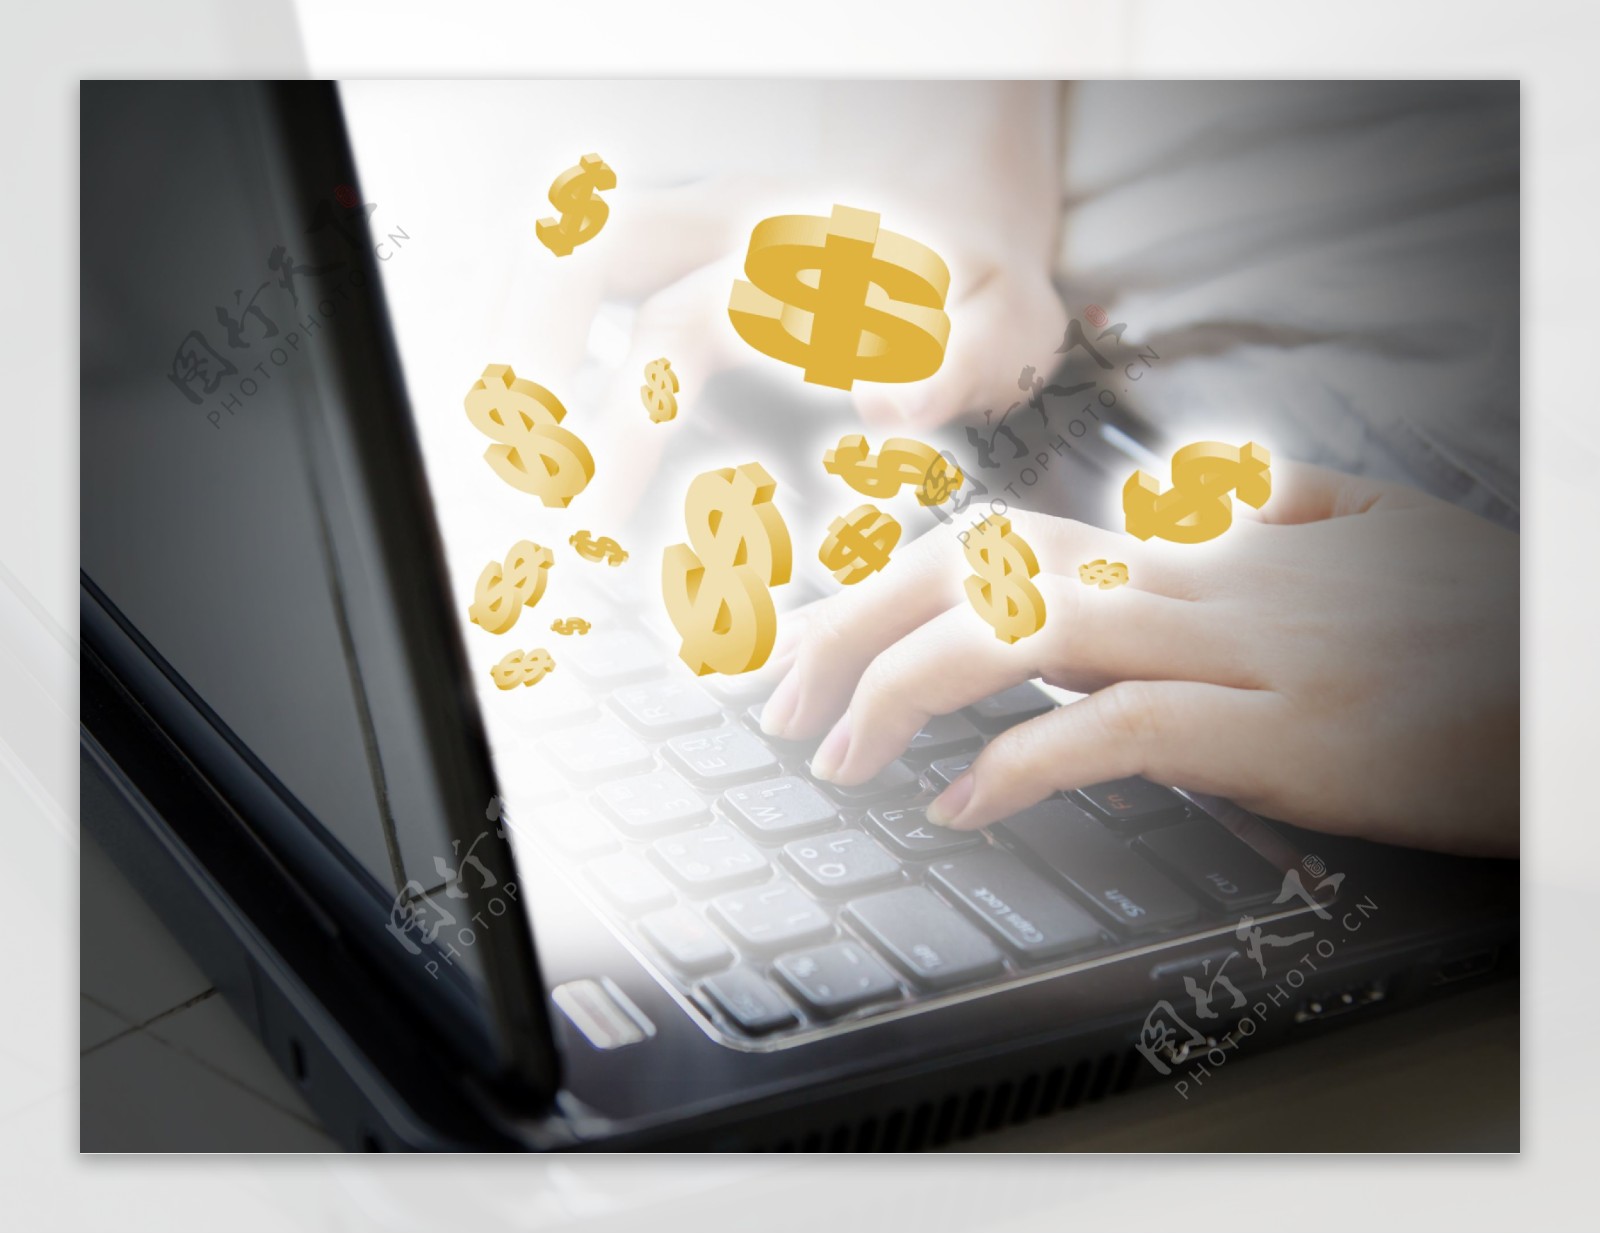 笔记本键盘上的货币符号图片